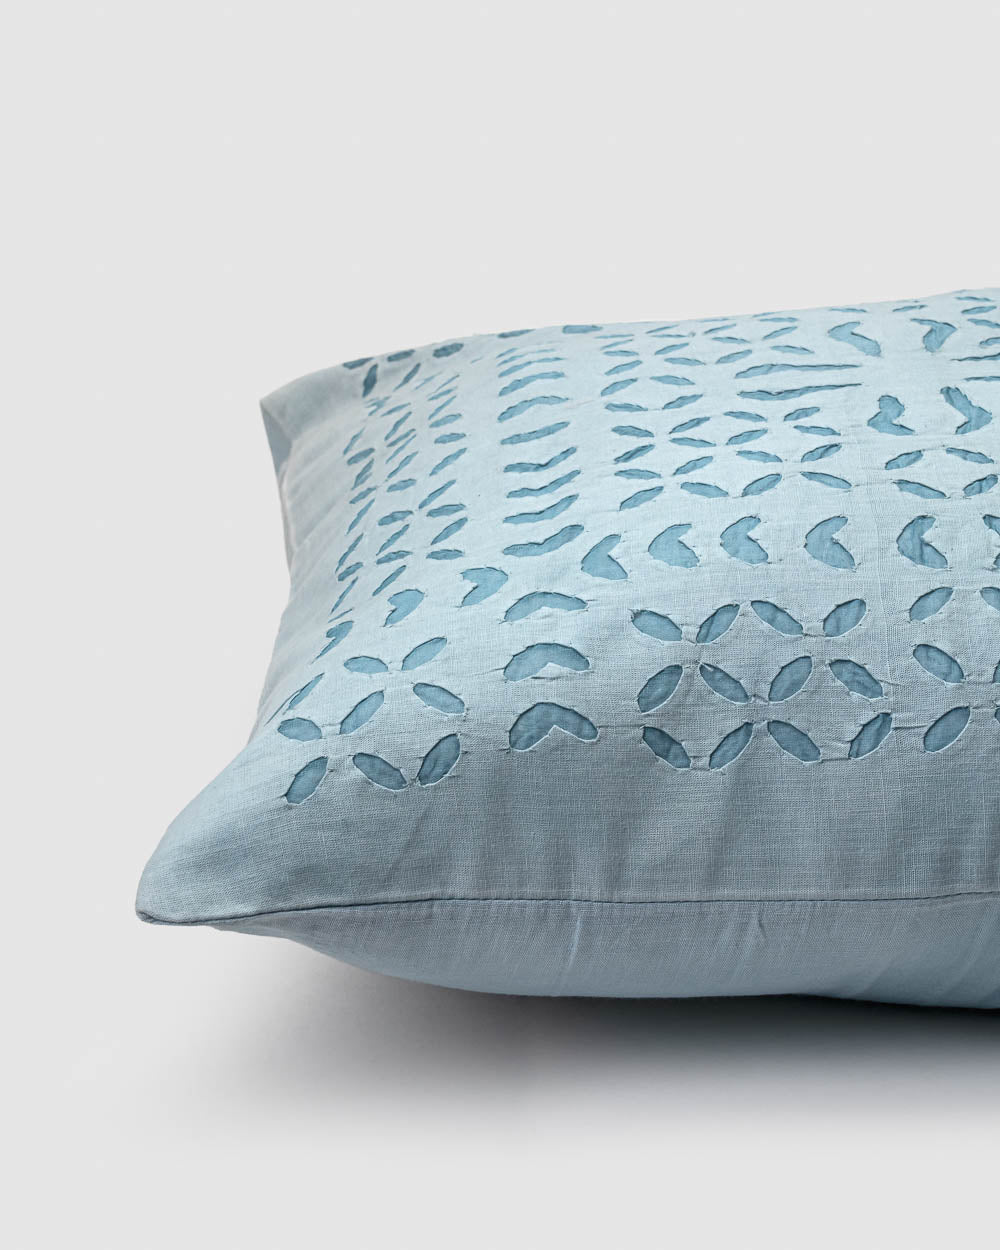 Cushion Cover Applique Makhana Design, Light Blue